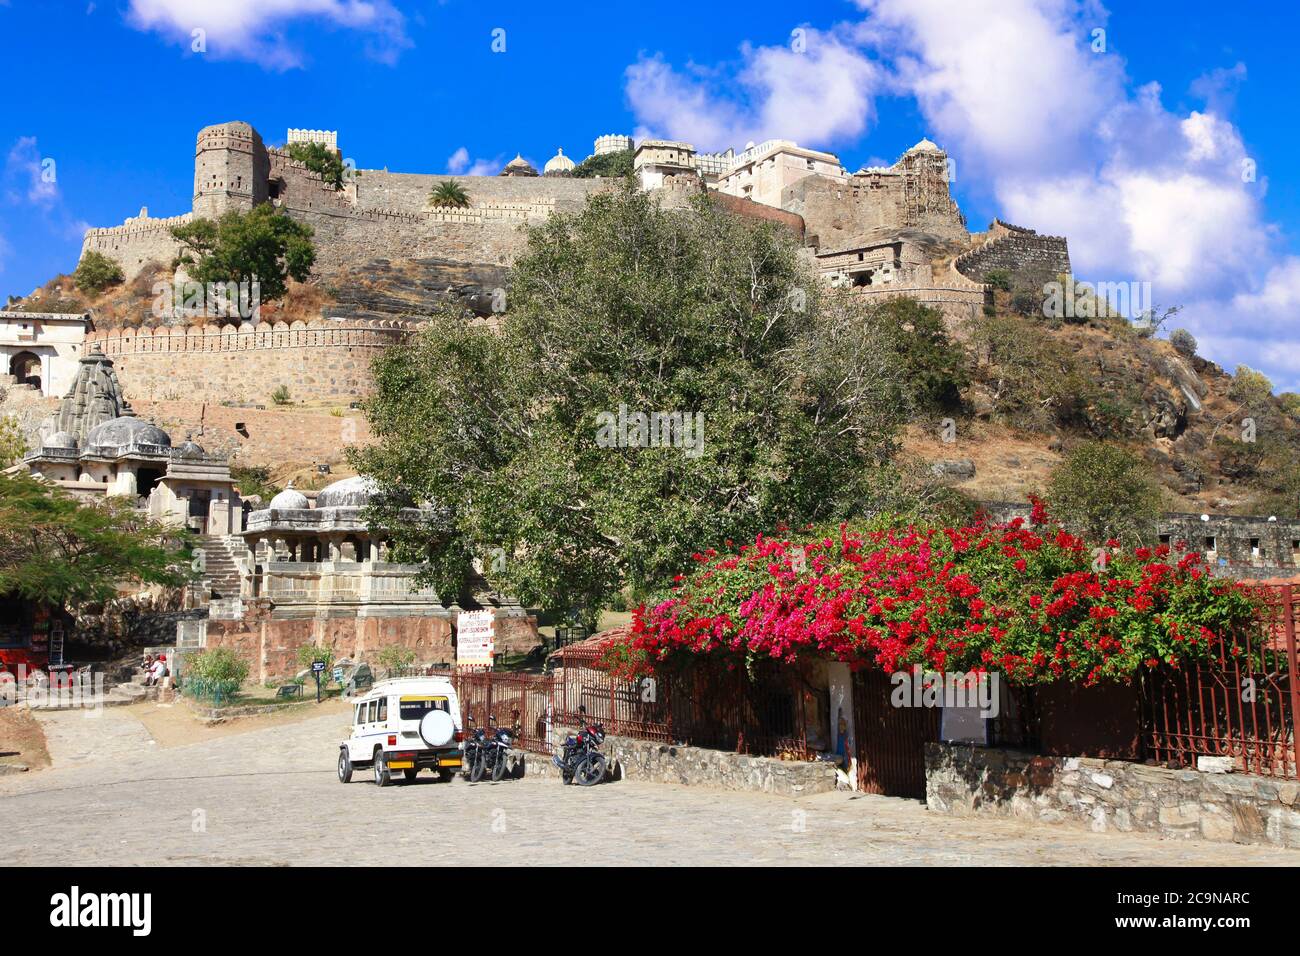 Château et murs fortifiés du fort de Kumbhalgarh dans l'État du Rajasthan. Inde Banque D'Images